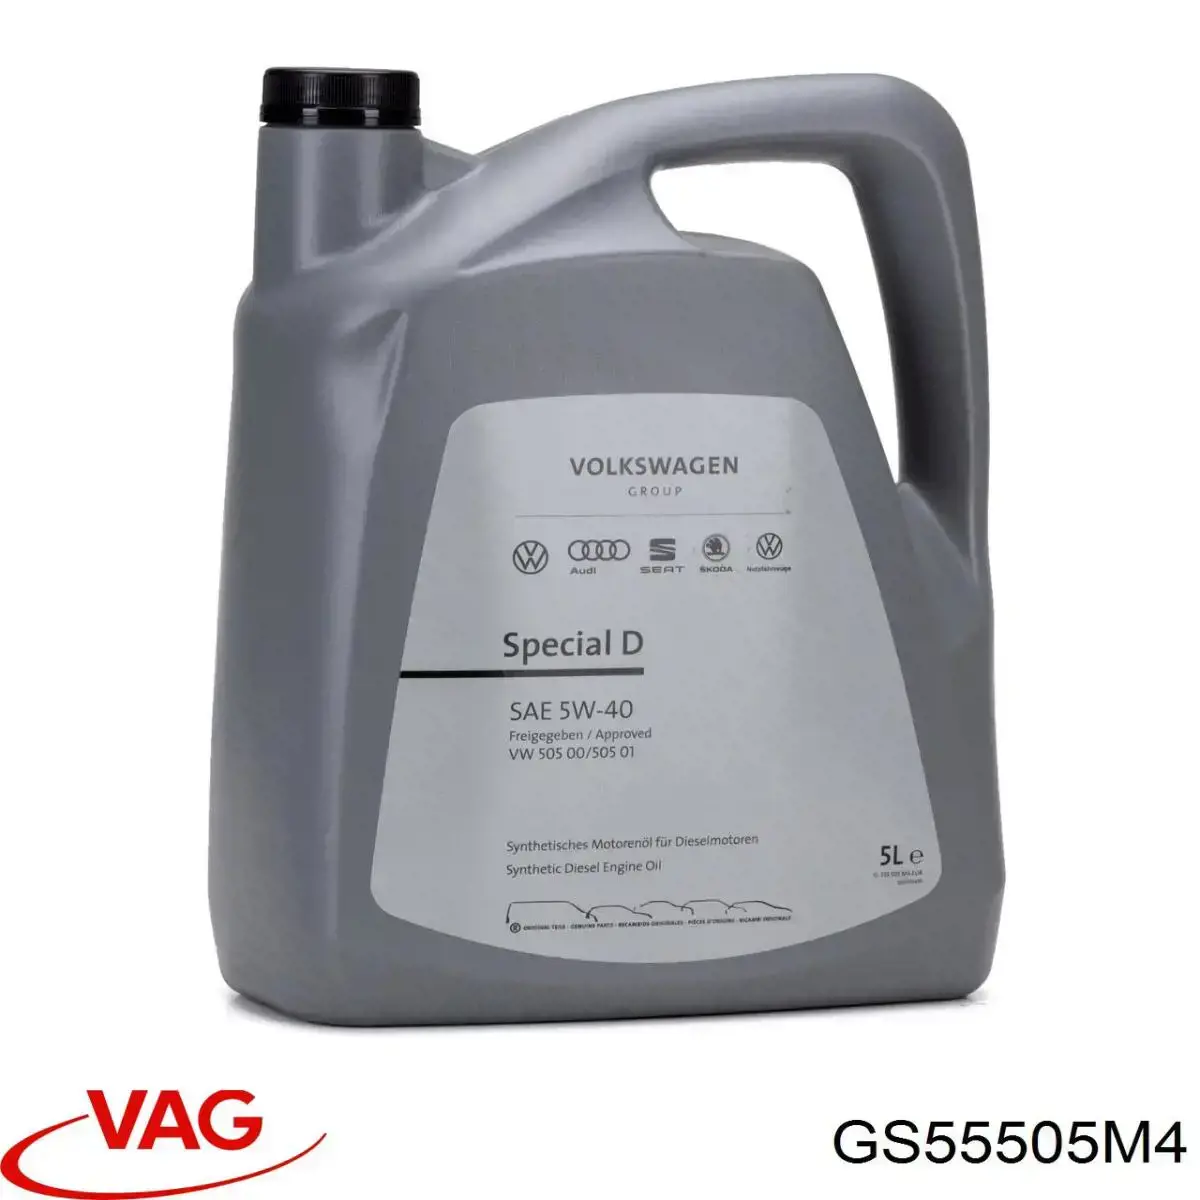 VAG (GS55505M4)